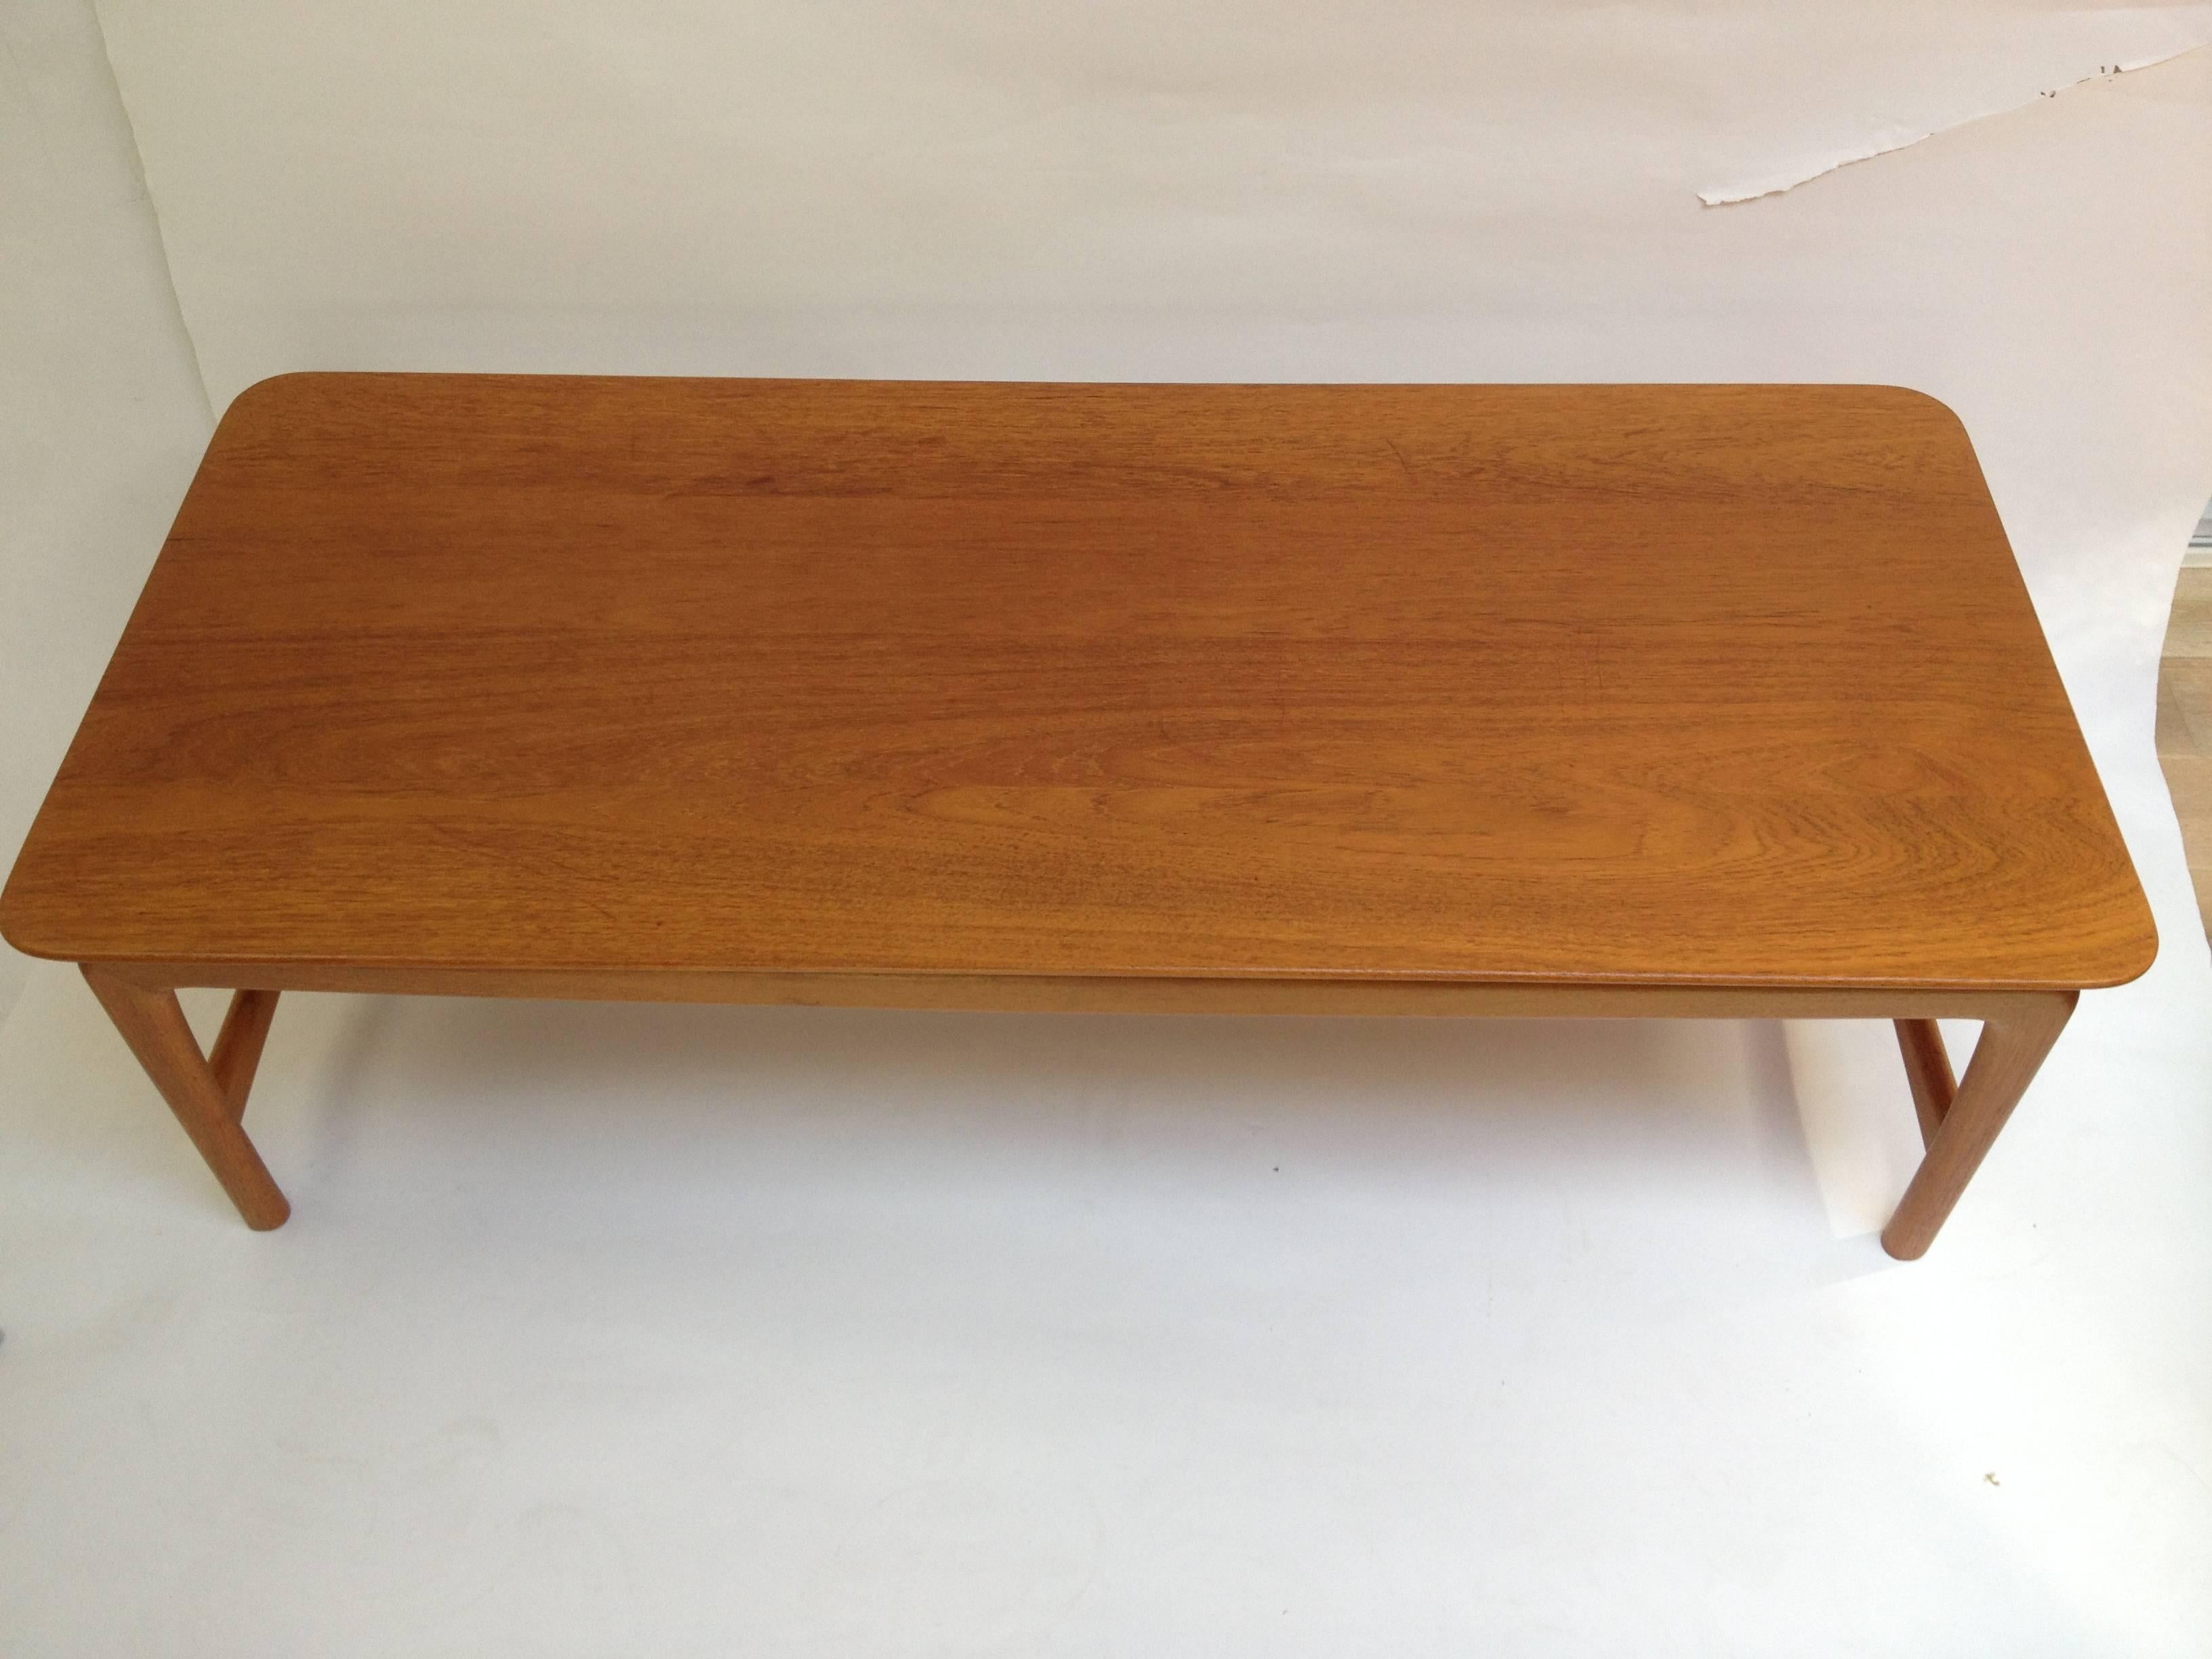 Scandinavian Modern 1950s Teak Coffee Table Designed by Peter Hvidt for France & Daverkosen For Sale